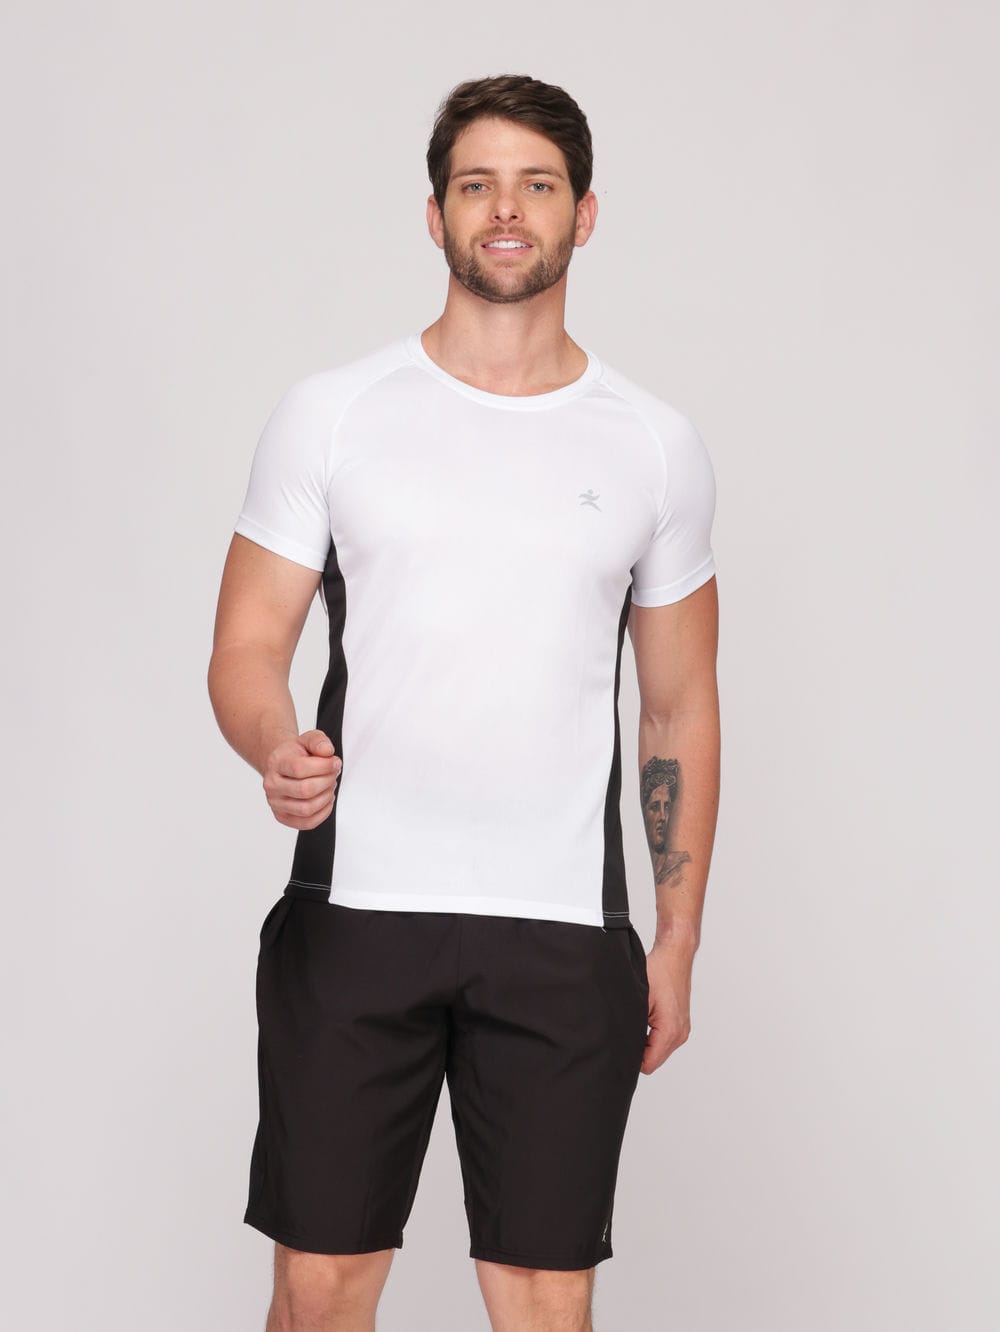 Camiseta Masculina com Recorte DryFit: Absorve 70% do Suor e Não Esquenta  - Branca